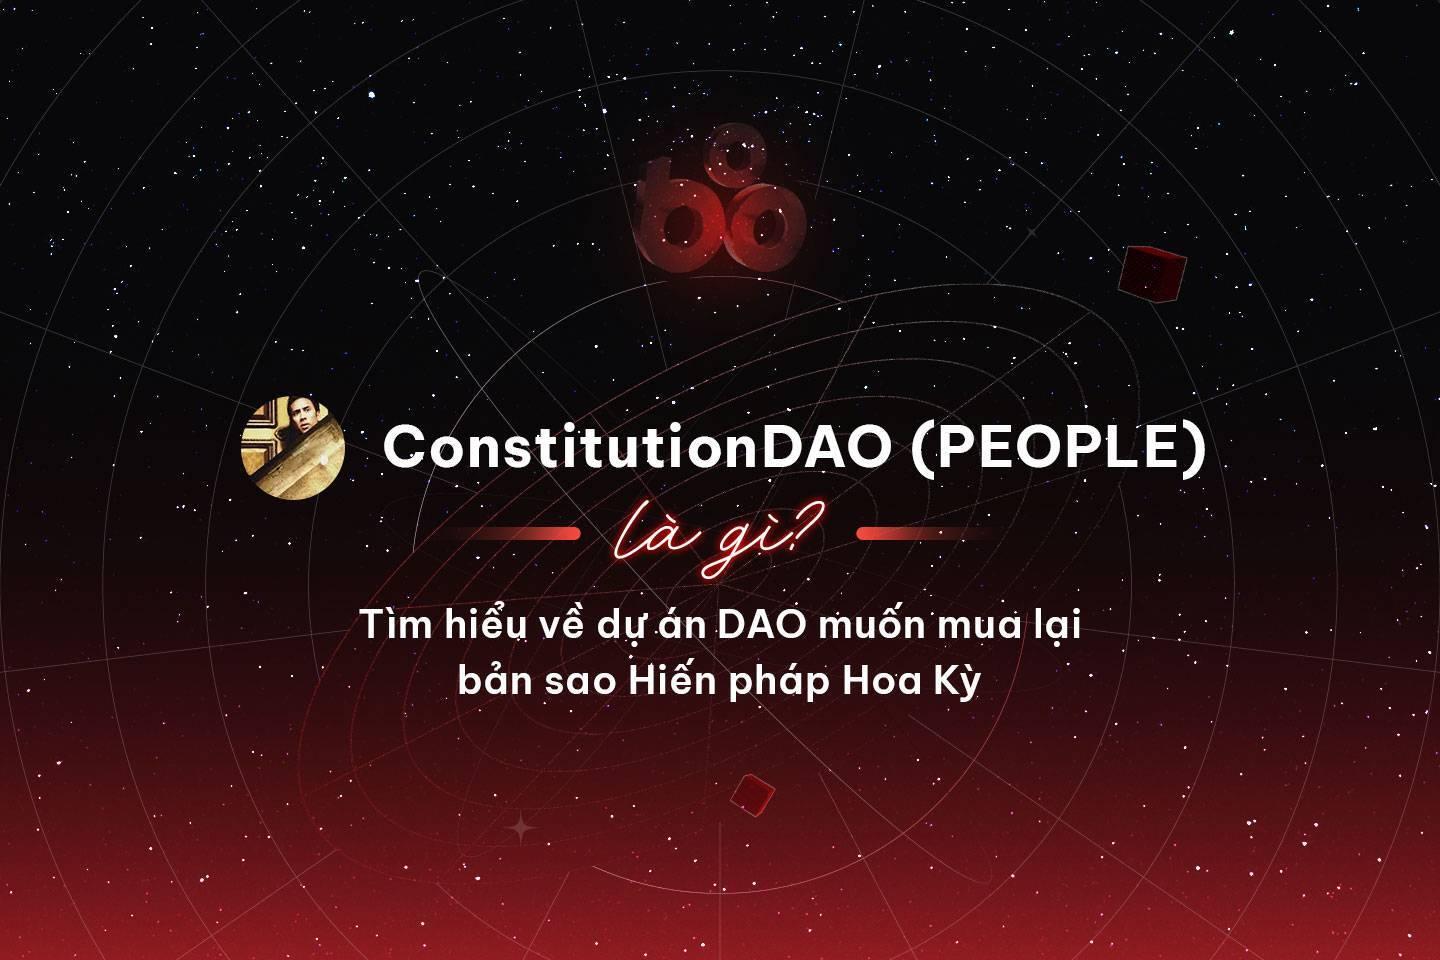 constitutiondao-people-la-gi-tim-hieu-ve-du-an-dao-muon-mua-lai-ban-sao-hien-phap-hoa-ky